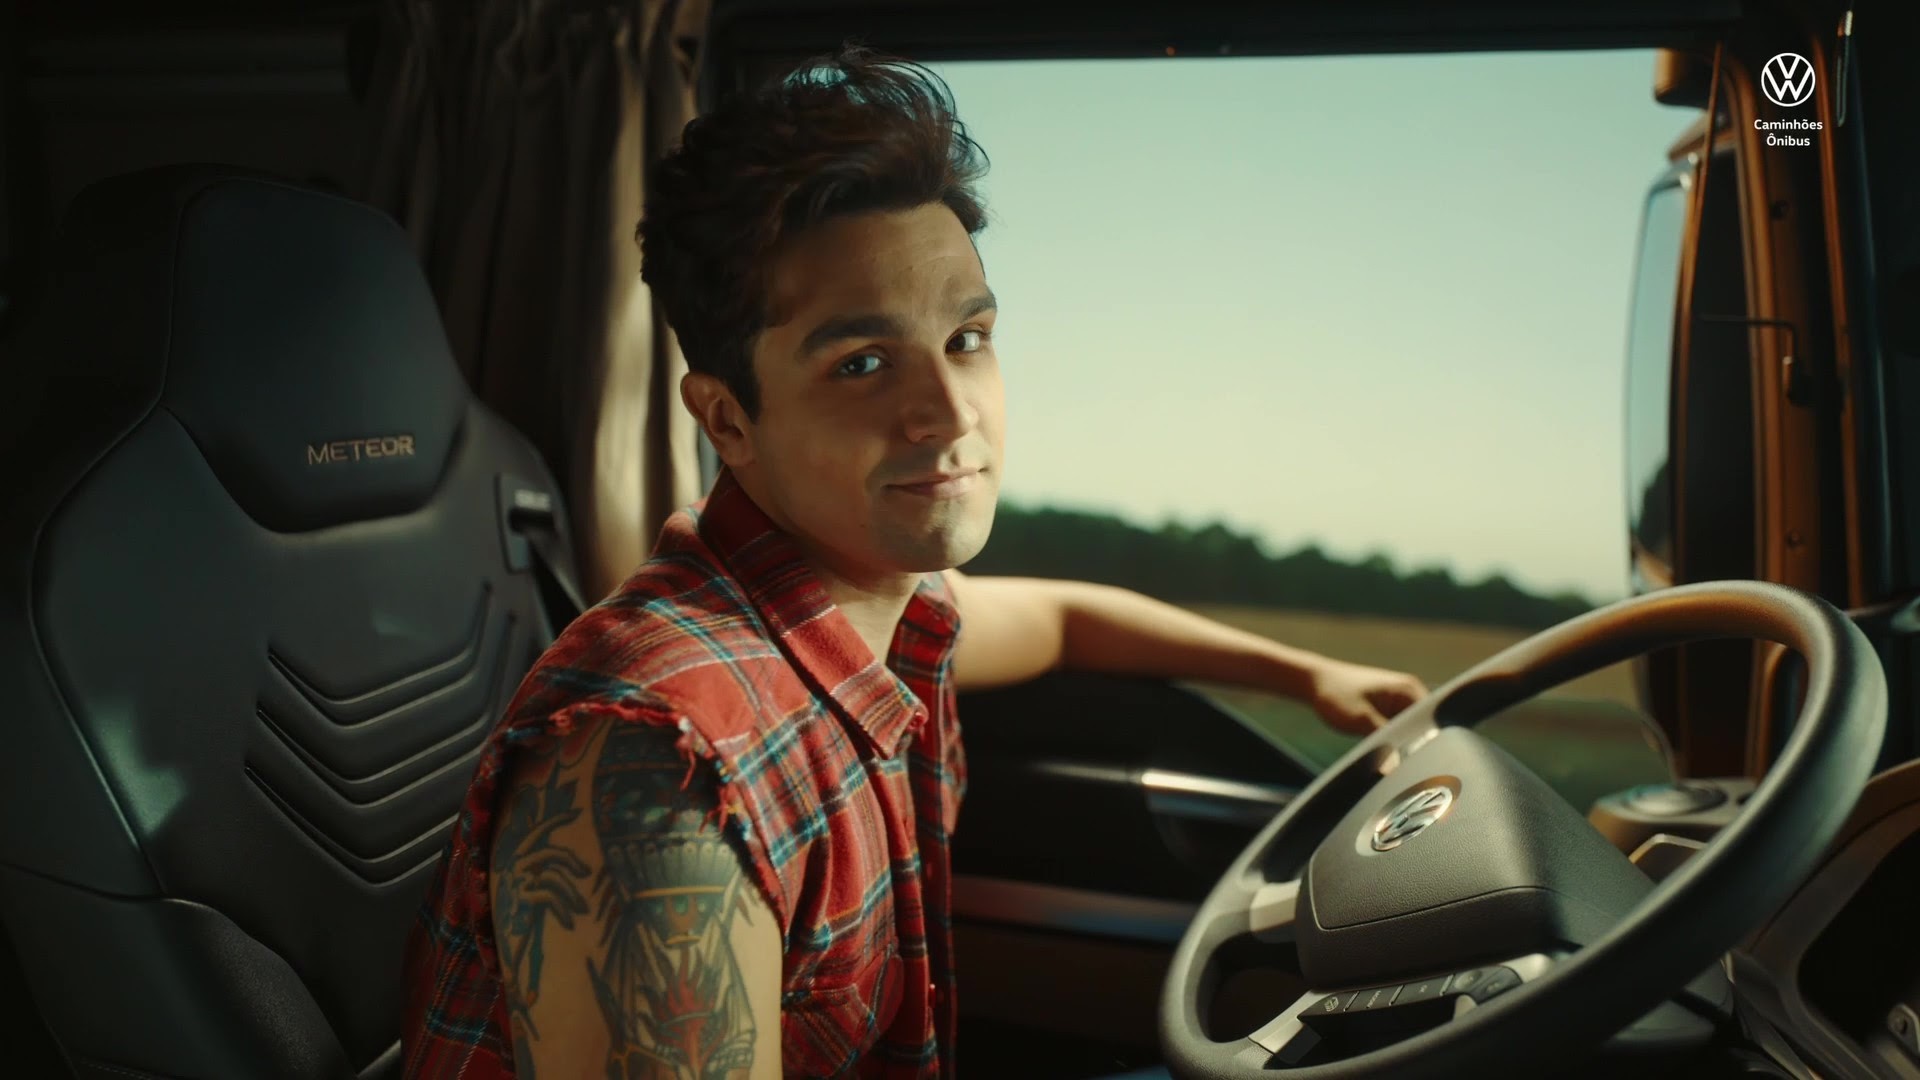 Volkswagen Caminhões lança campanha do Meteor com Luan Santana; veja o vídeo